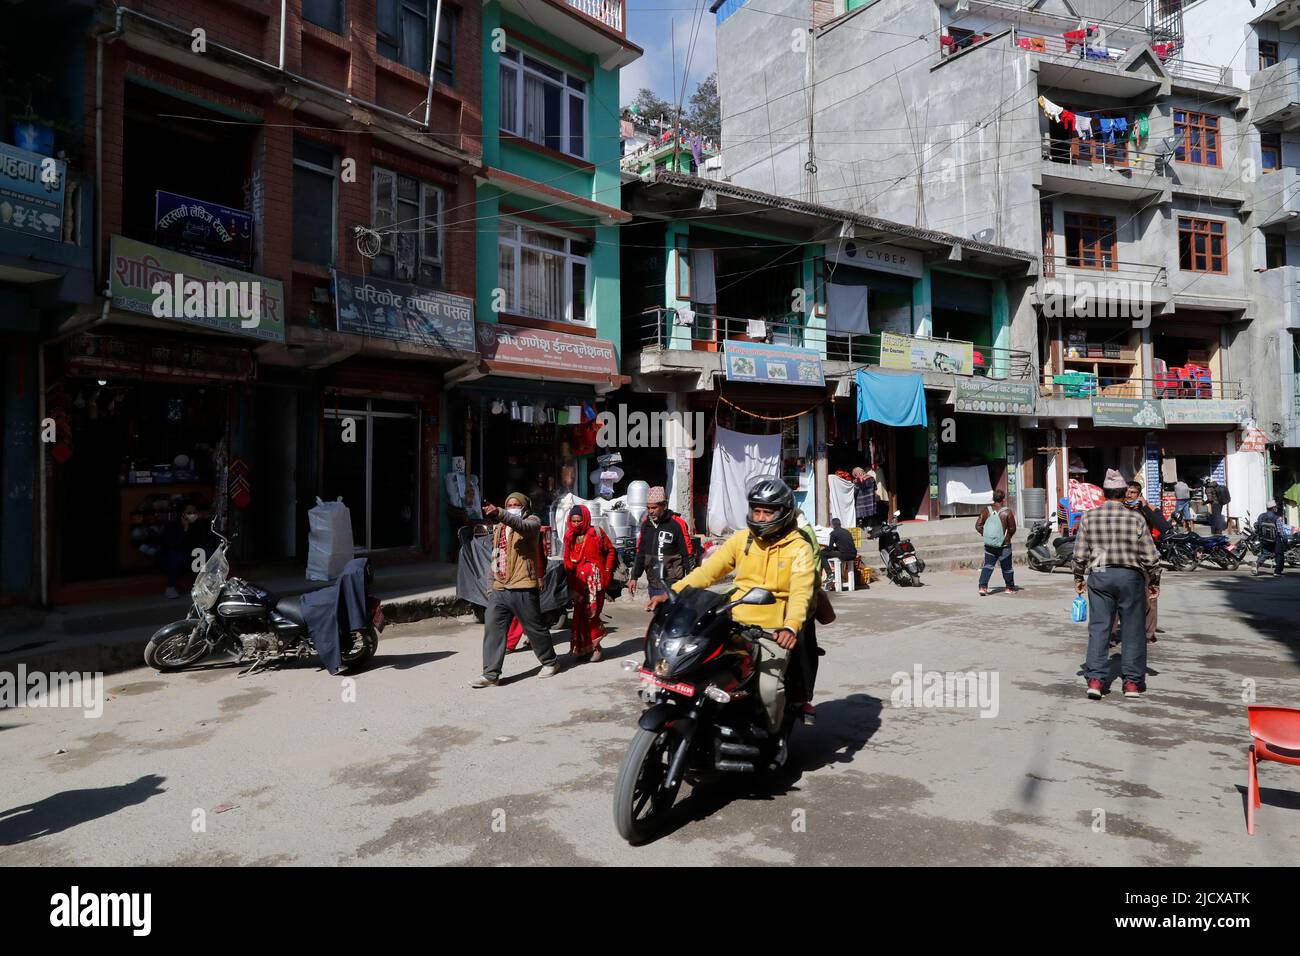 Main street in the Nepalese city of Charikot, Nepal, Asia Stock Photo